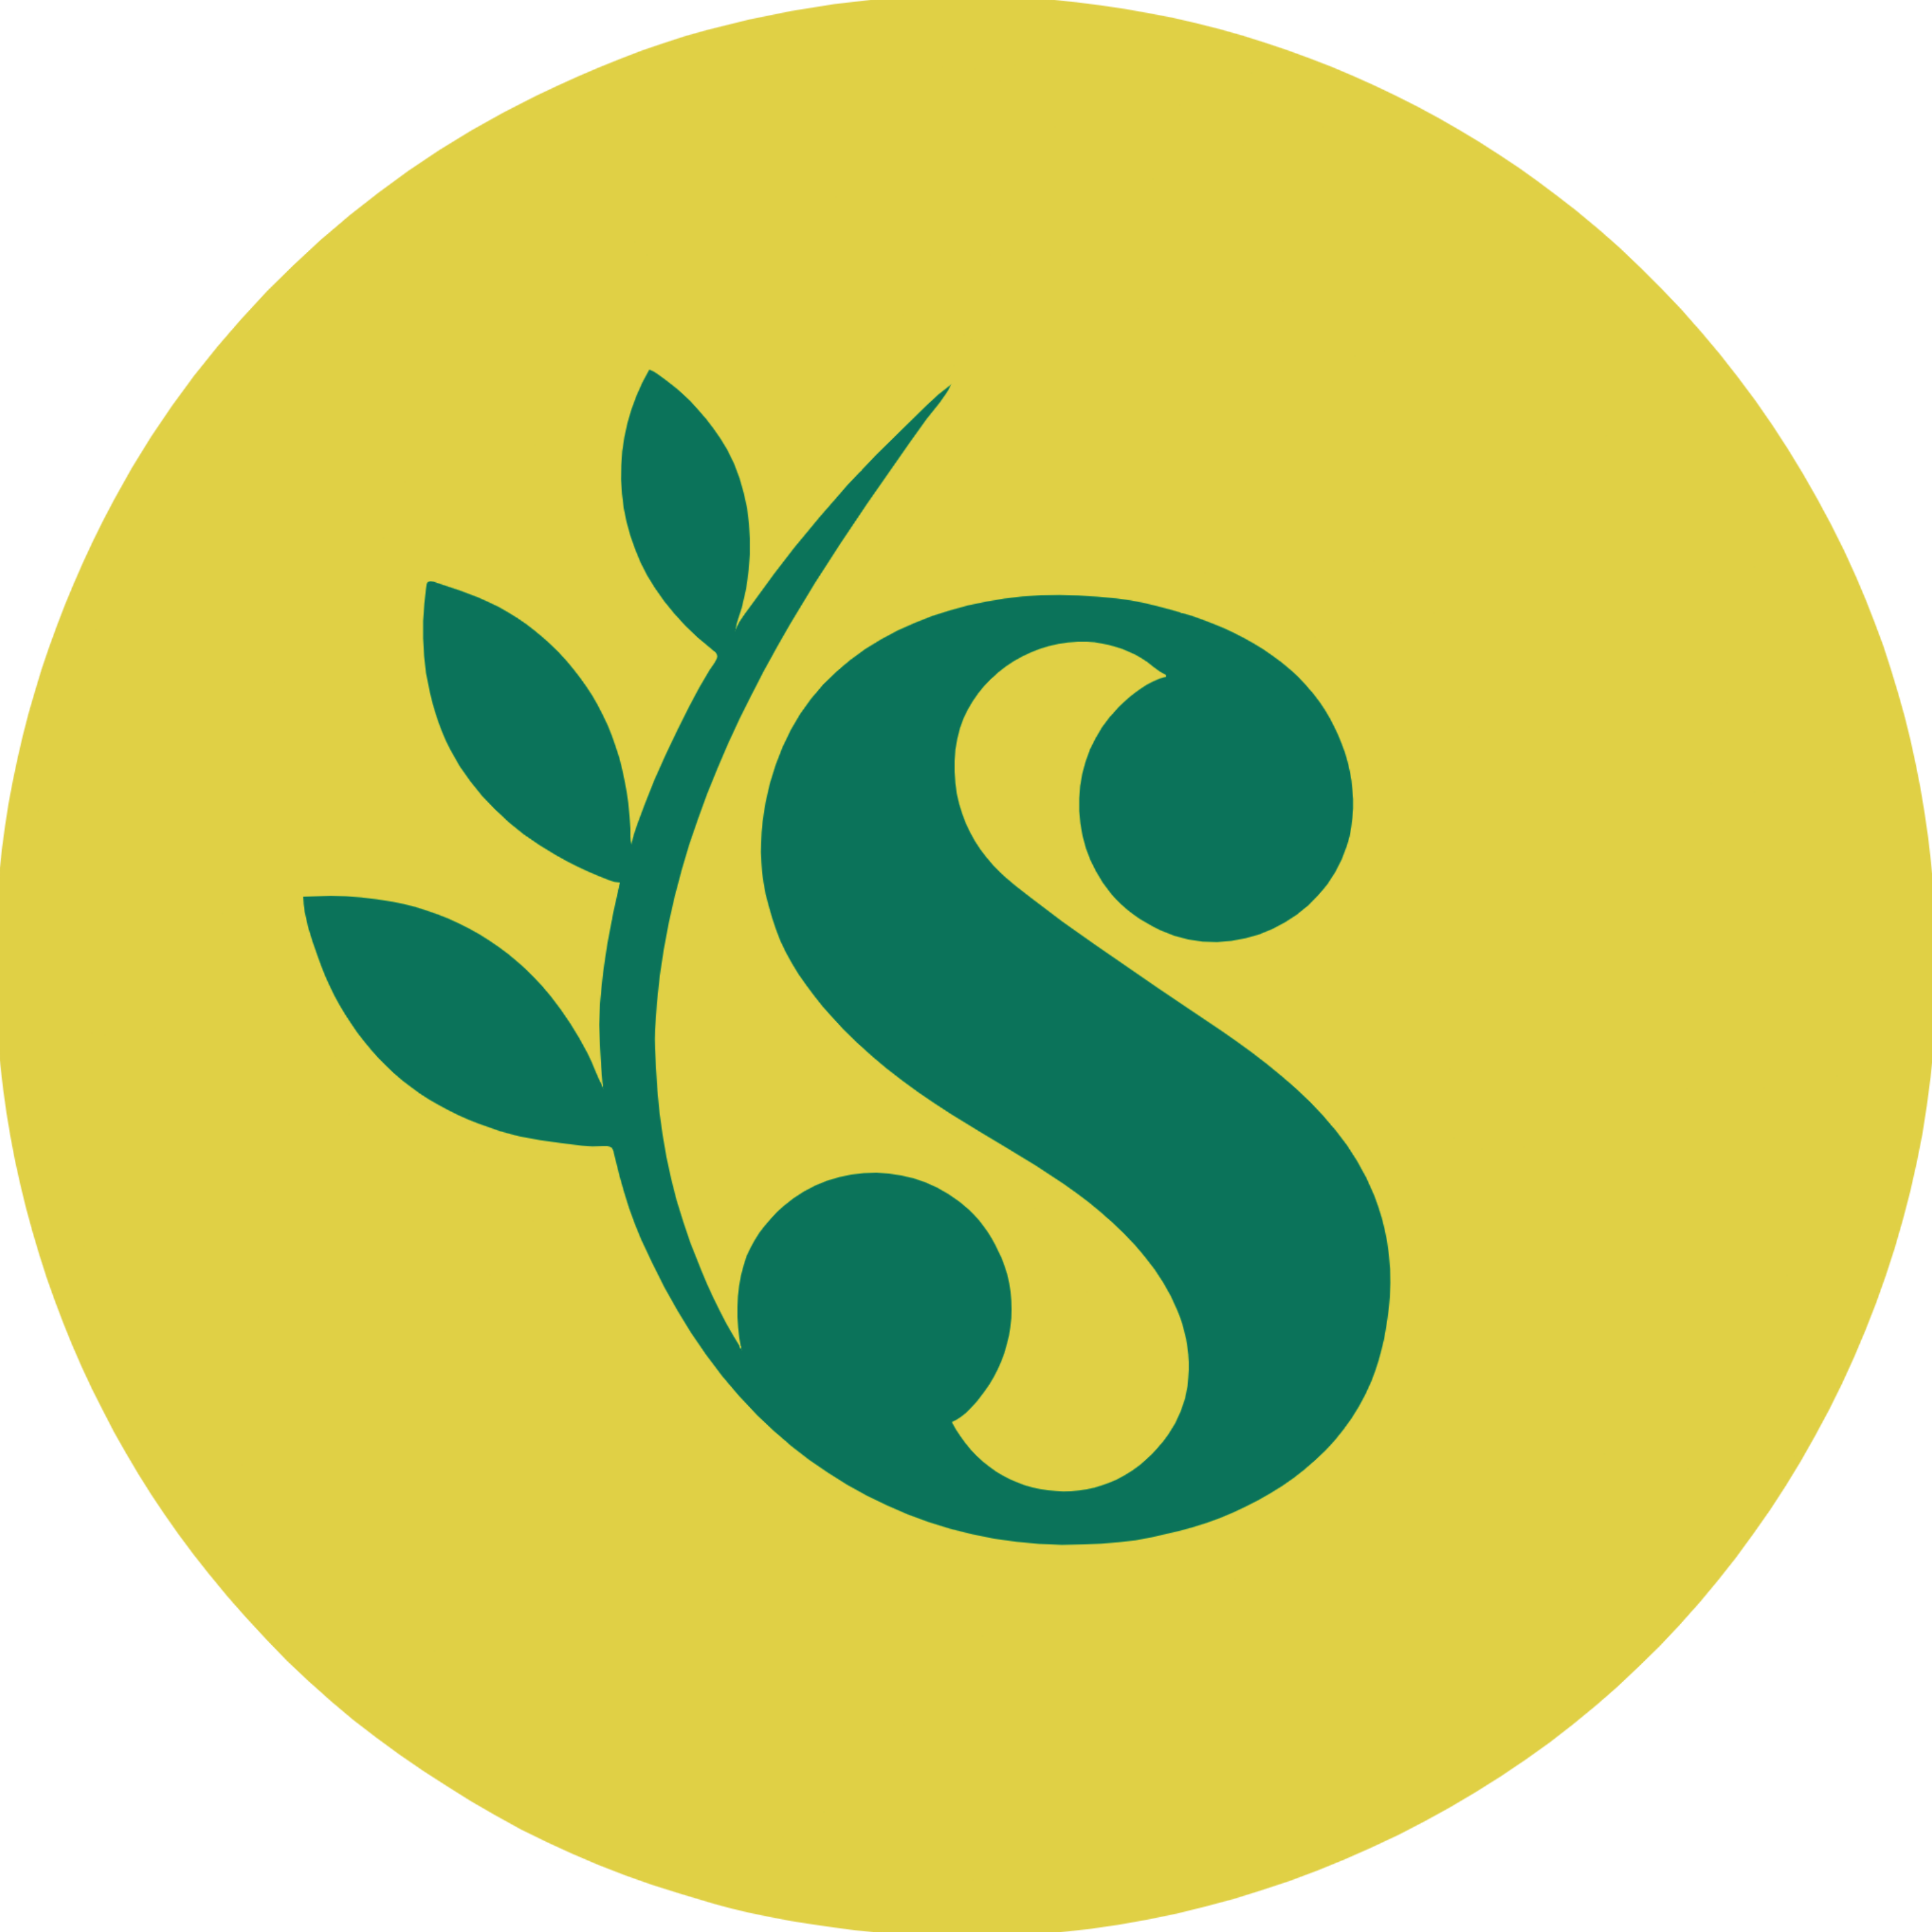 Sufra SVG Logo Transparent Picture